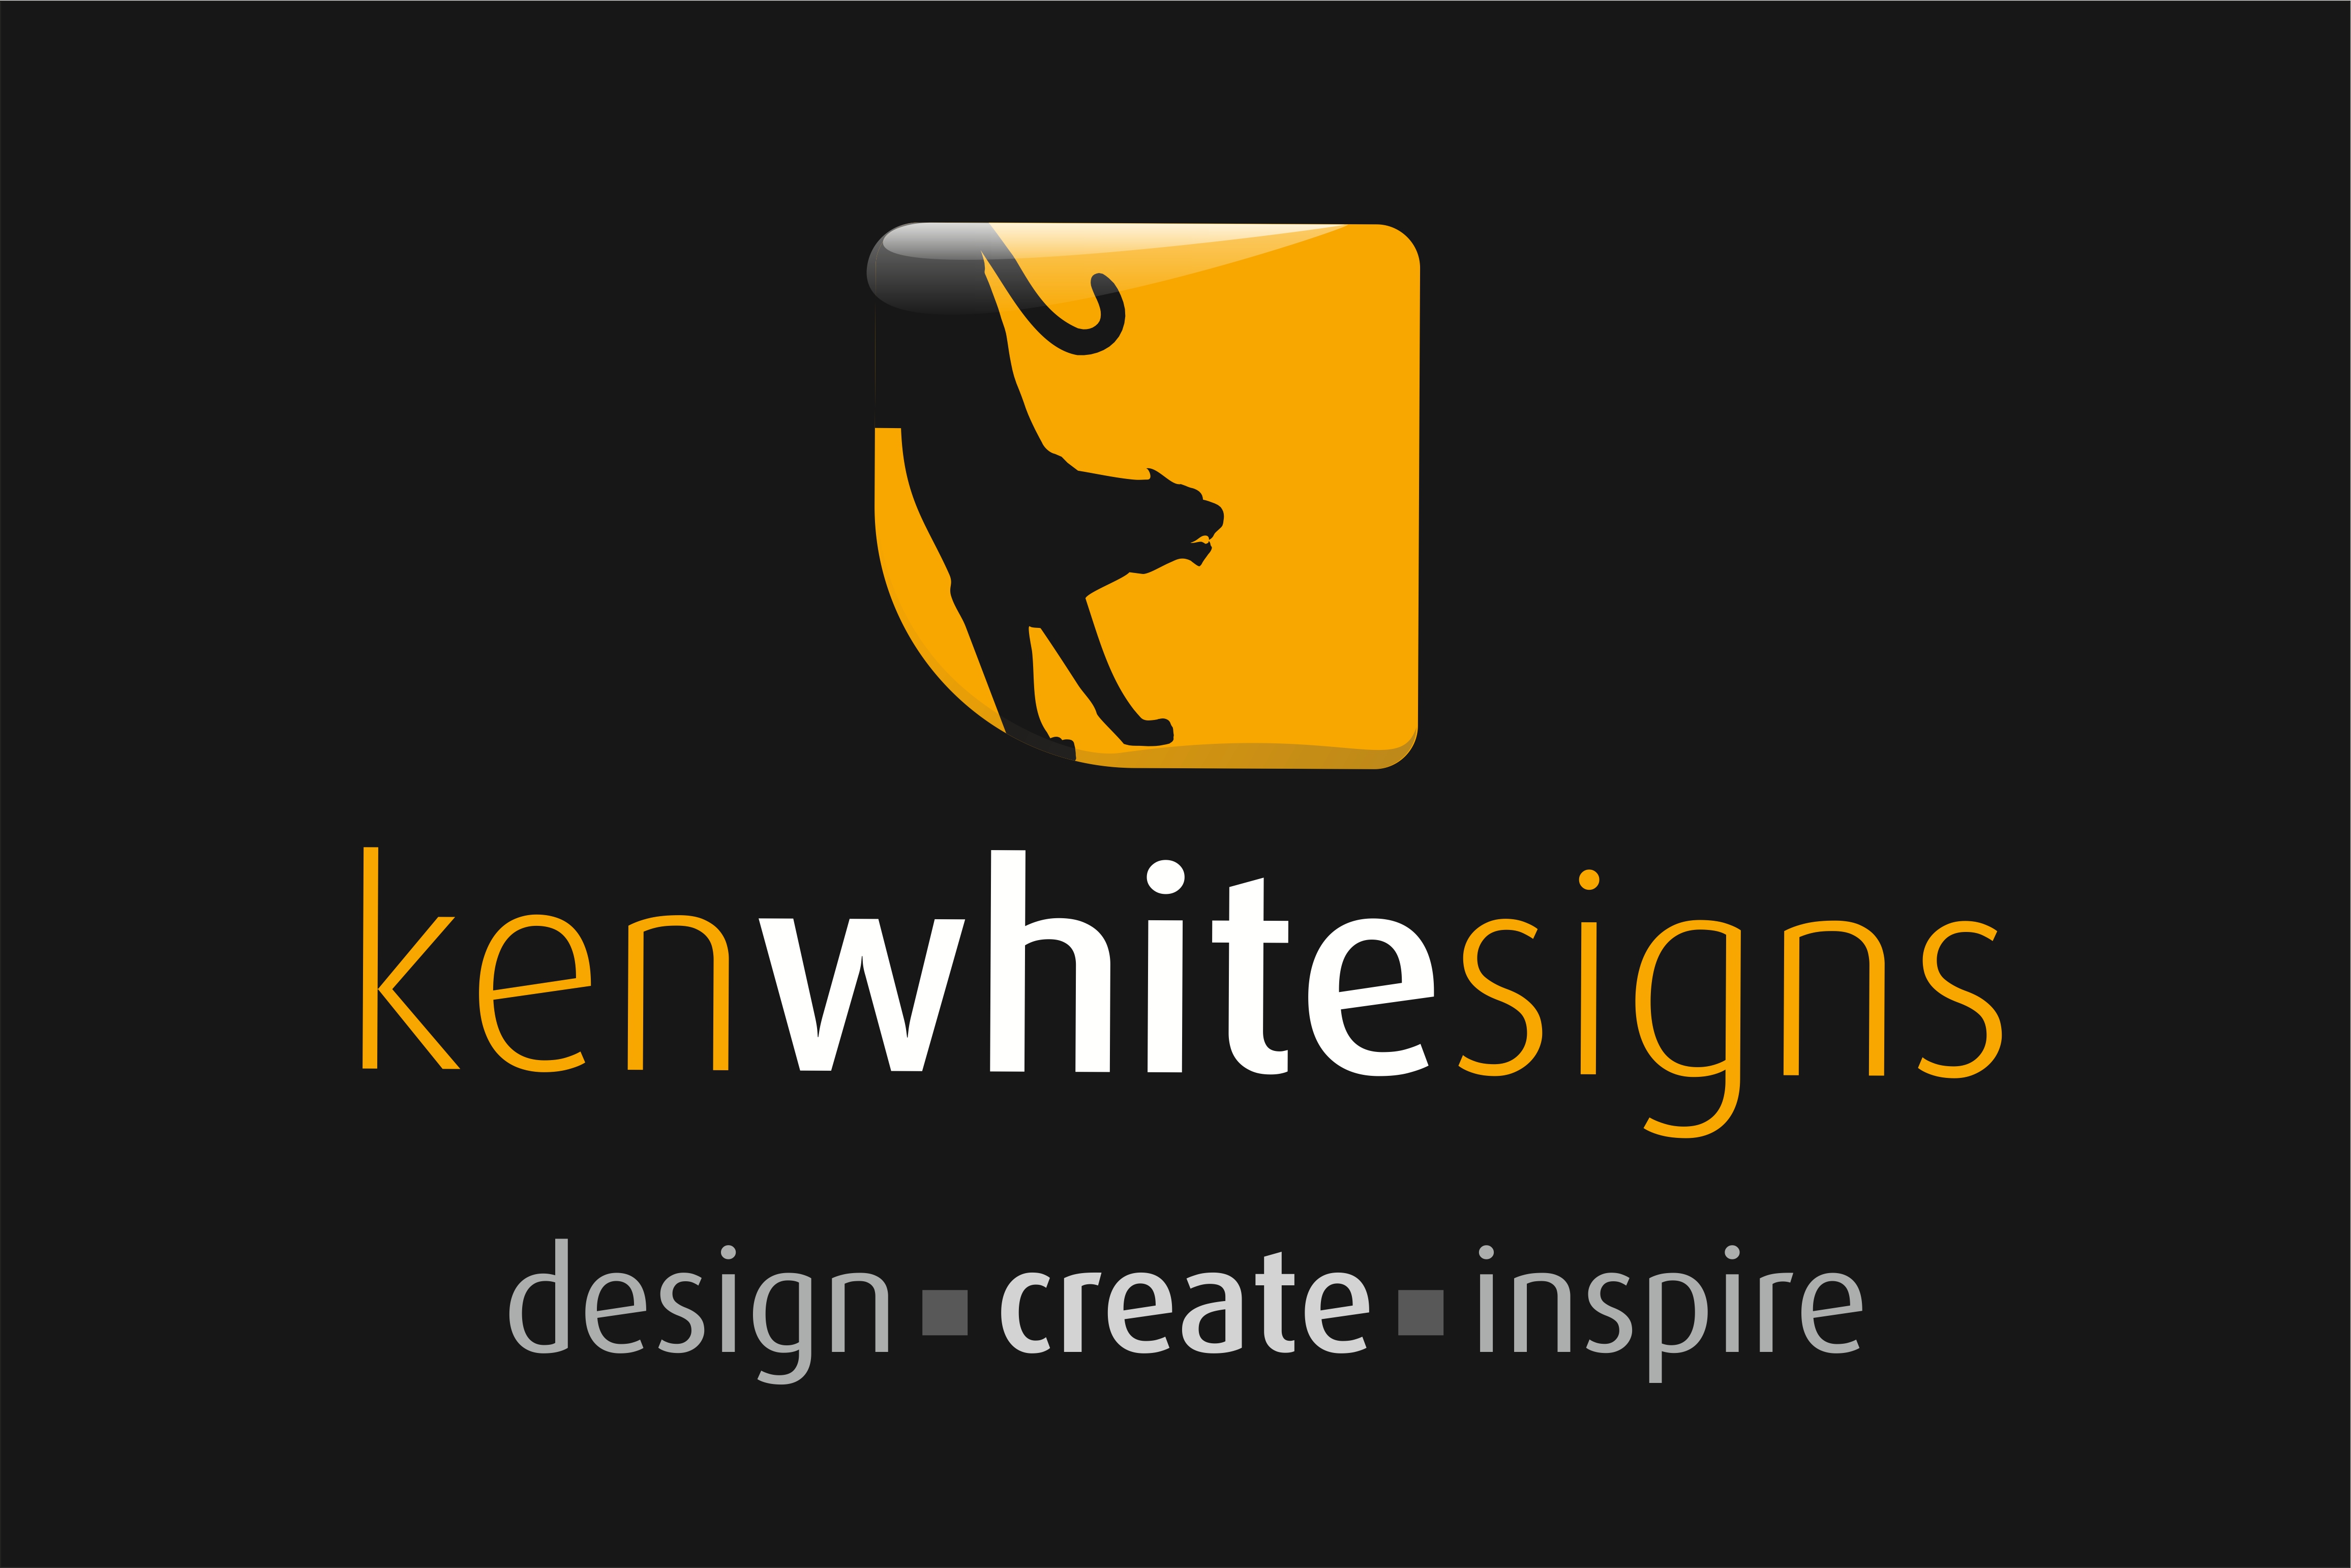 Ken White Signs Ltd